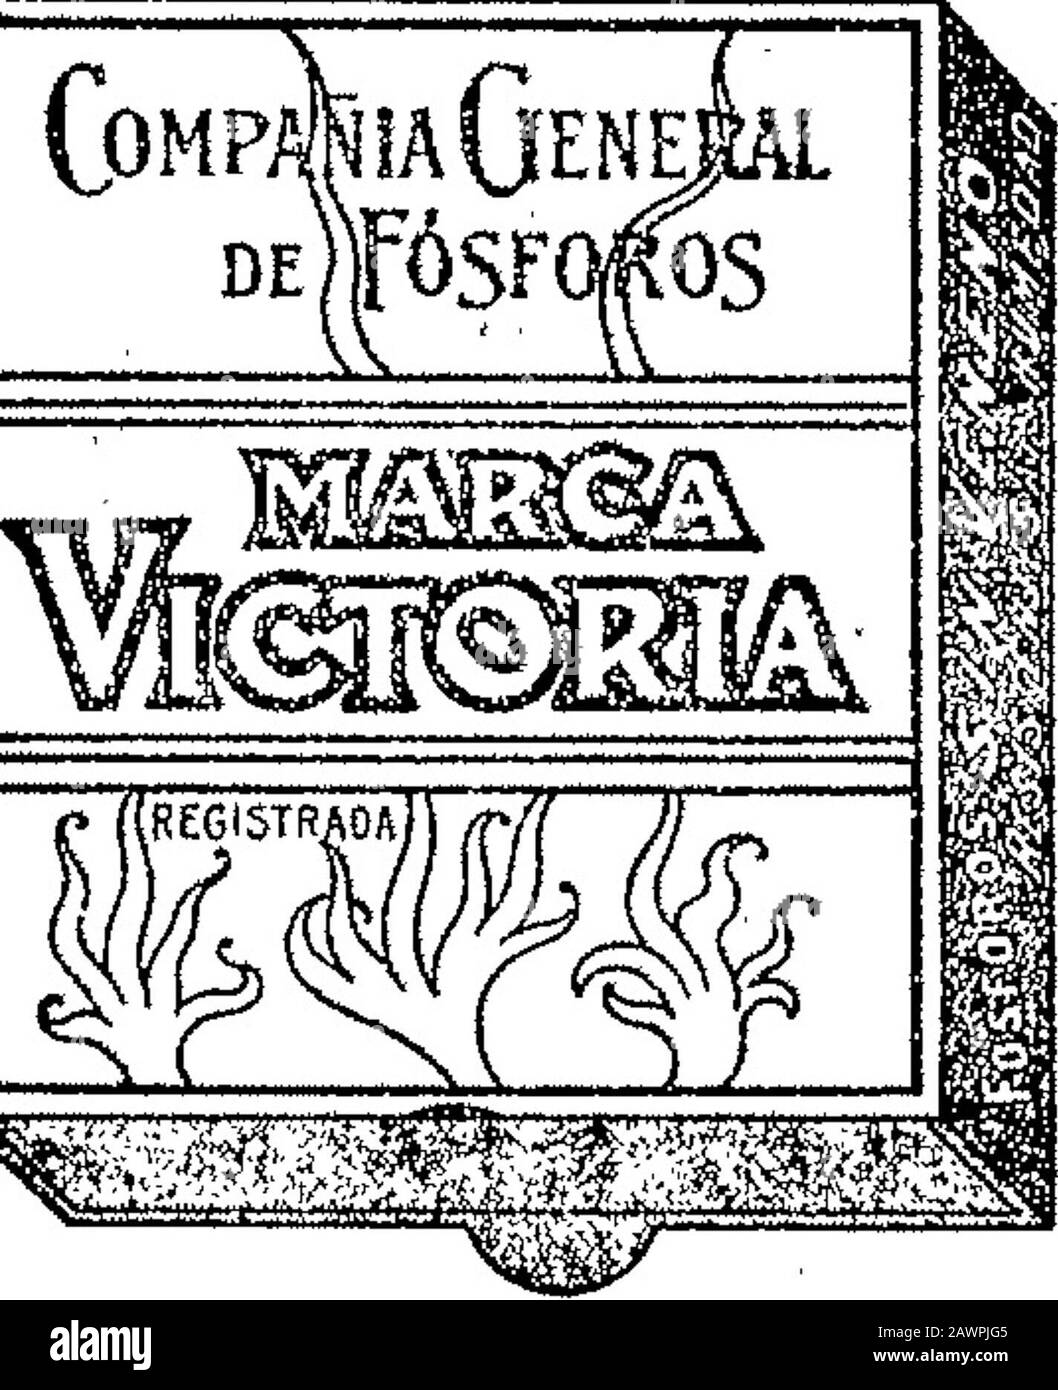 Boletín Oficial de la República Argentina1907 1ra sección . Abril 15 de 1907.—J. M. Adoue y Cía.-Vinos de la dase 68 (Substituida) v-3-julio. A«ta no 30SSO Compí^iaGenji DE|fÓSFO¡^S. FAFNIR ^^&gt;M.&gt;lMr„.v^,,l,l^T&lt;l^¿,^,|^.Ml^^t.^f;Vl•fir^hl^^.TJ? Junio 25 de 1907.-Compañía General deFósforos —Fósforos de la clase 12. v-3 julio. x.«»a. u» 30.8S] Stock Photo